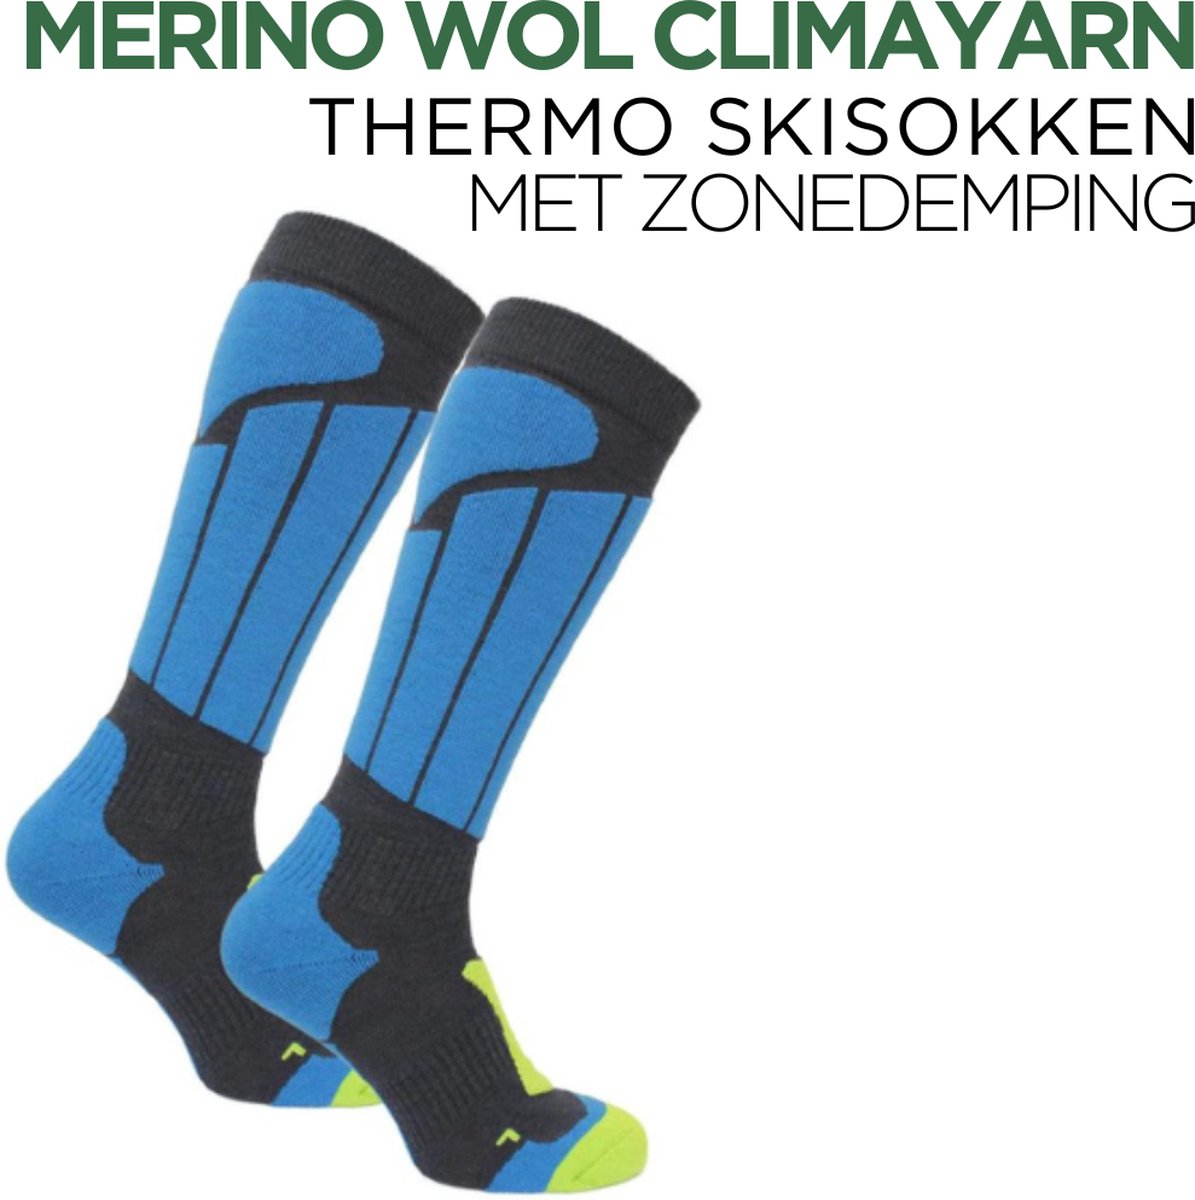 Norfolk Skisokken - Merino wol Climayarn - Antiblaren - Anti Zweet Thermosokken - Skisokken met Schokabsorptie Zonedemping - Warm en Droog - Maat 47-50 - Blauw - Aspen